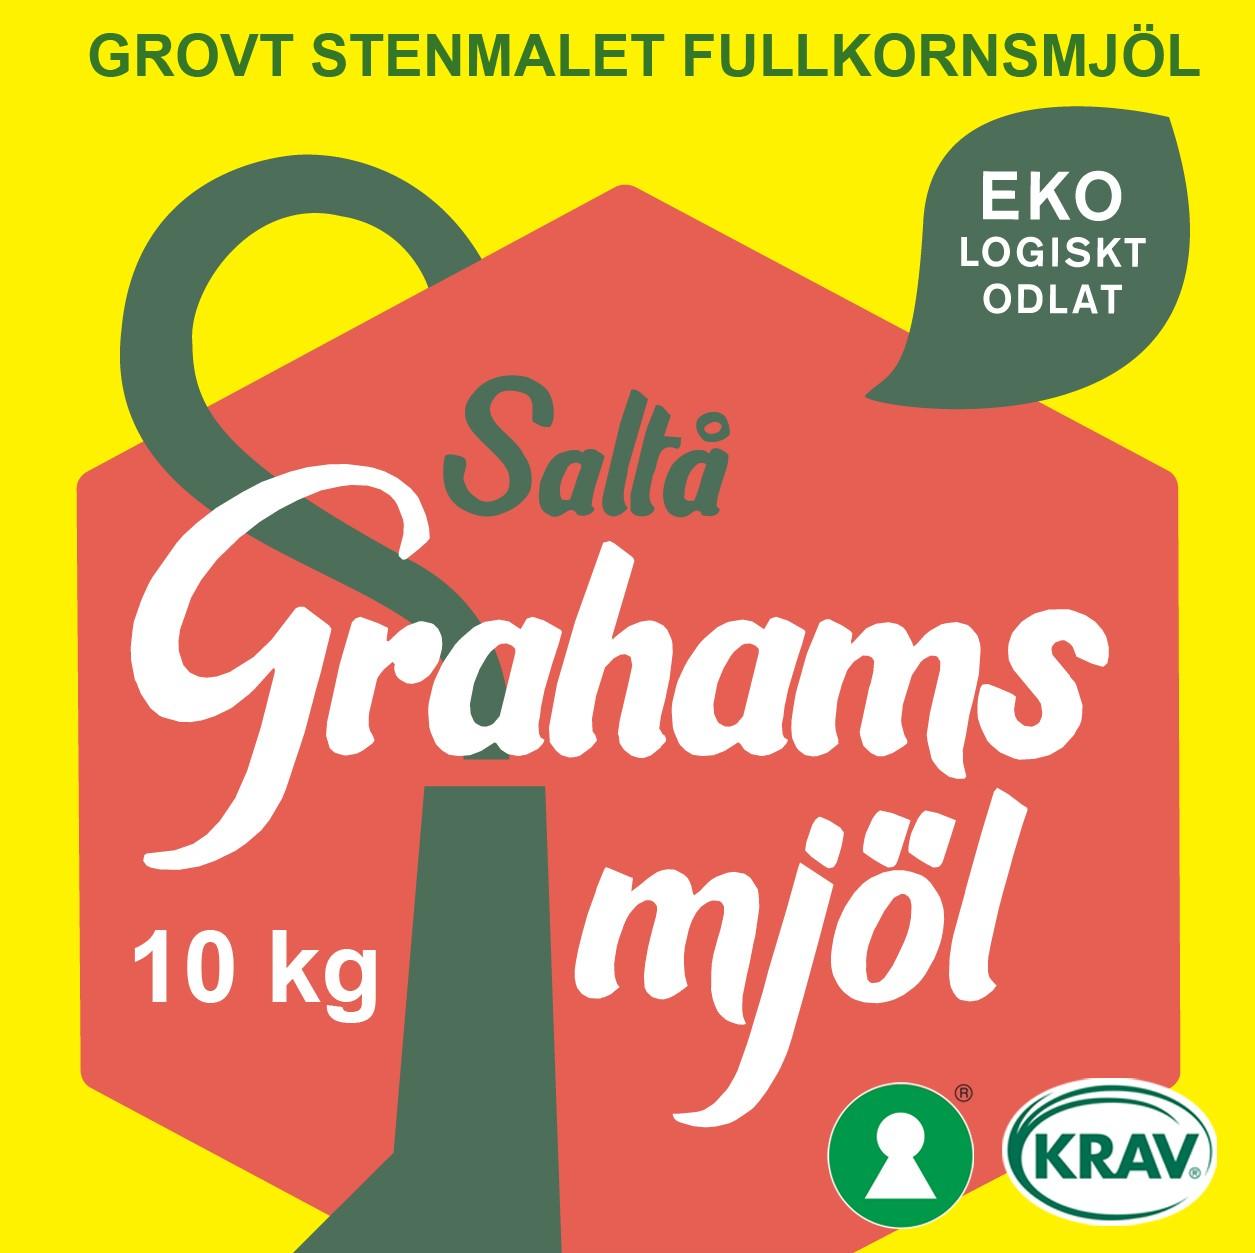 Saltå Kvarn's Grahamsmjöl grovt'